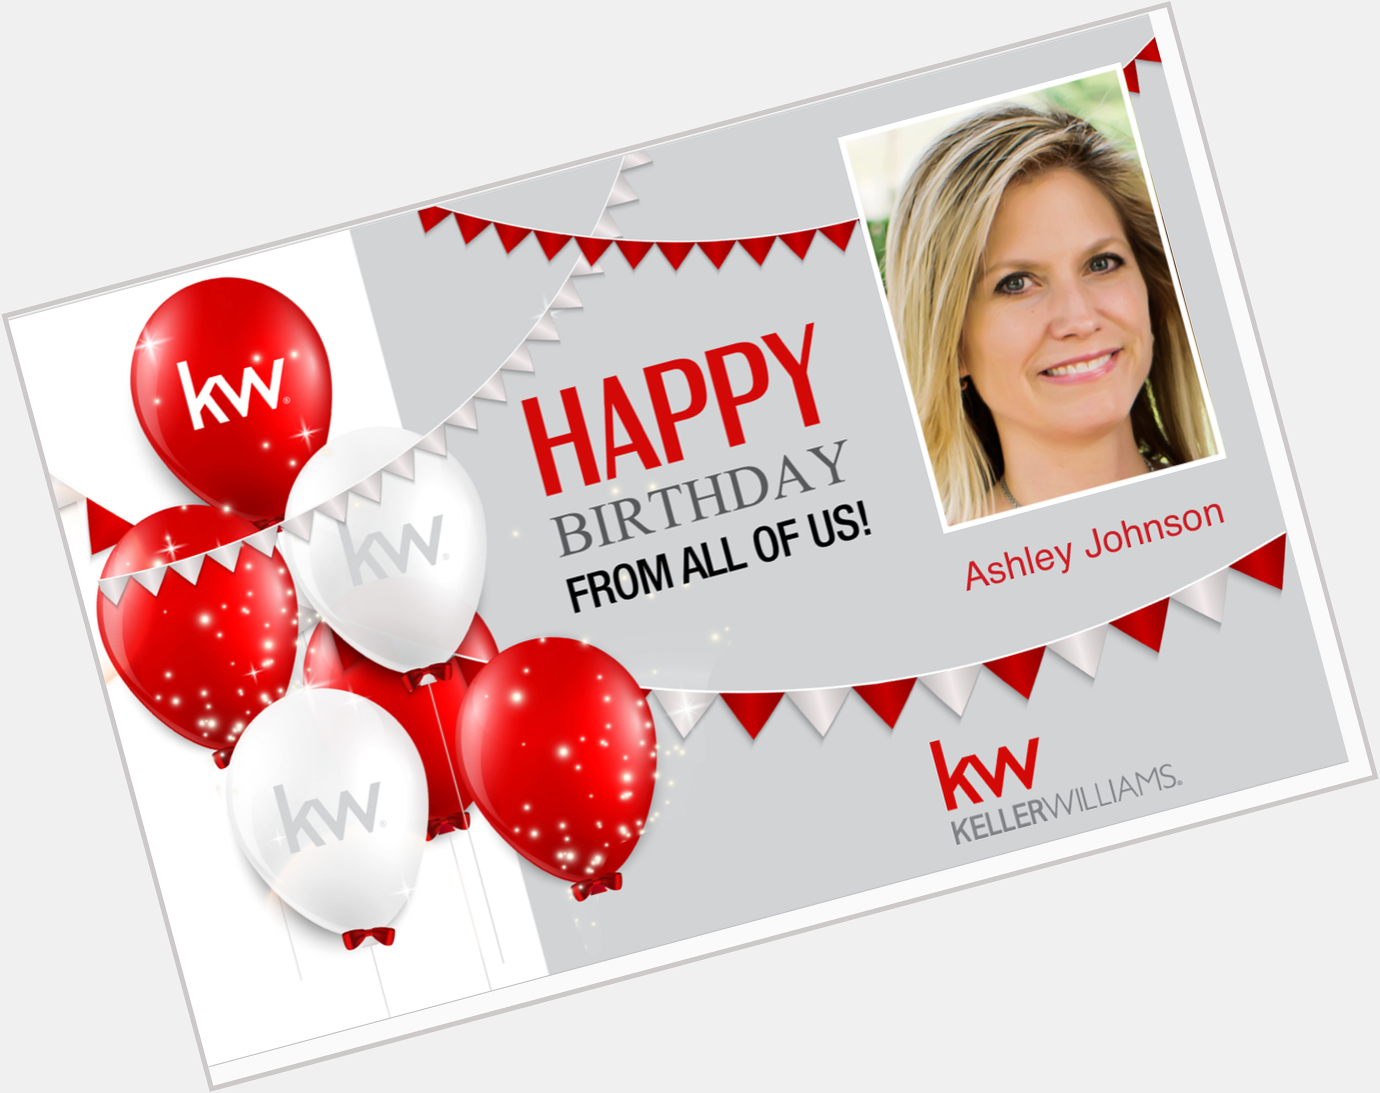 Happy Birthday, Ashley Johnson! 